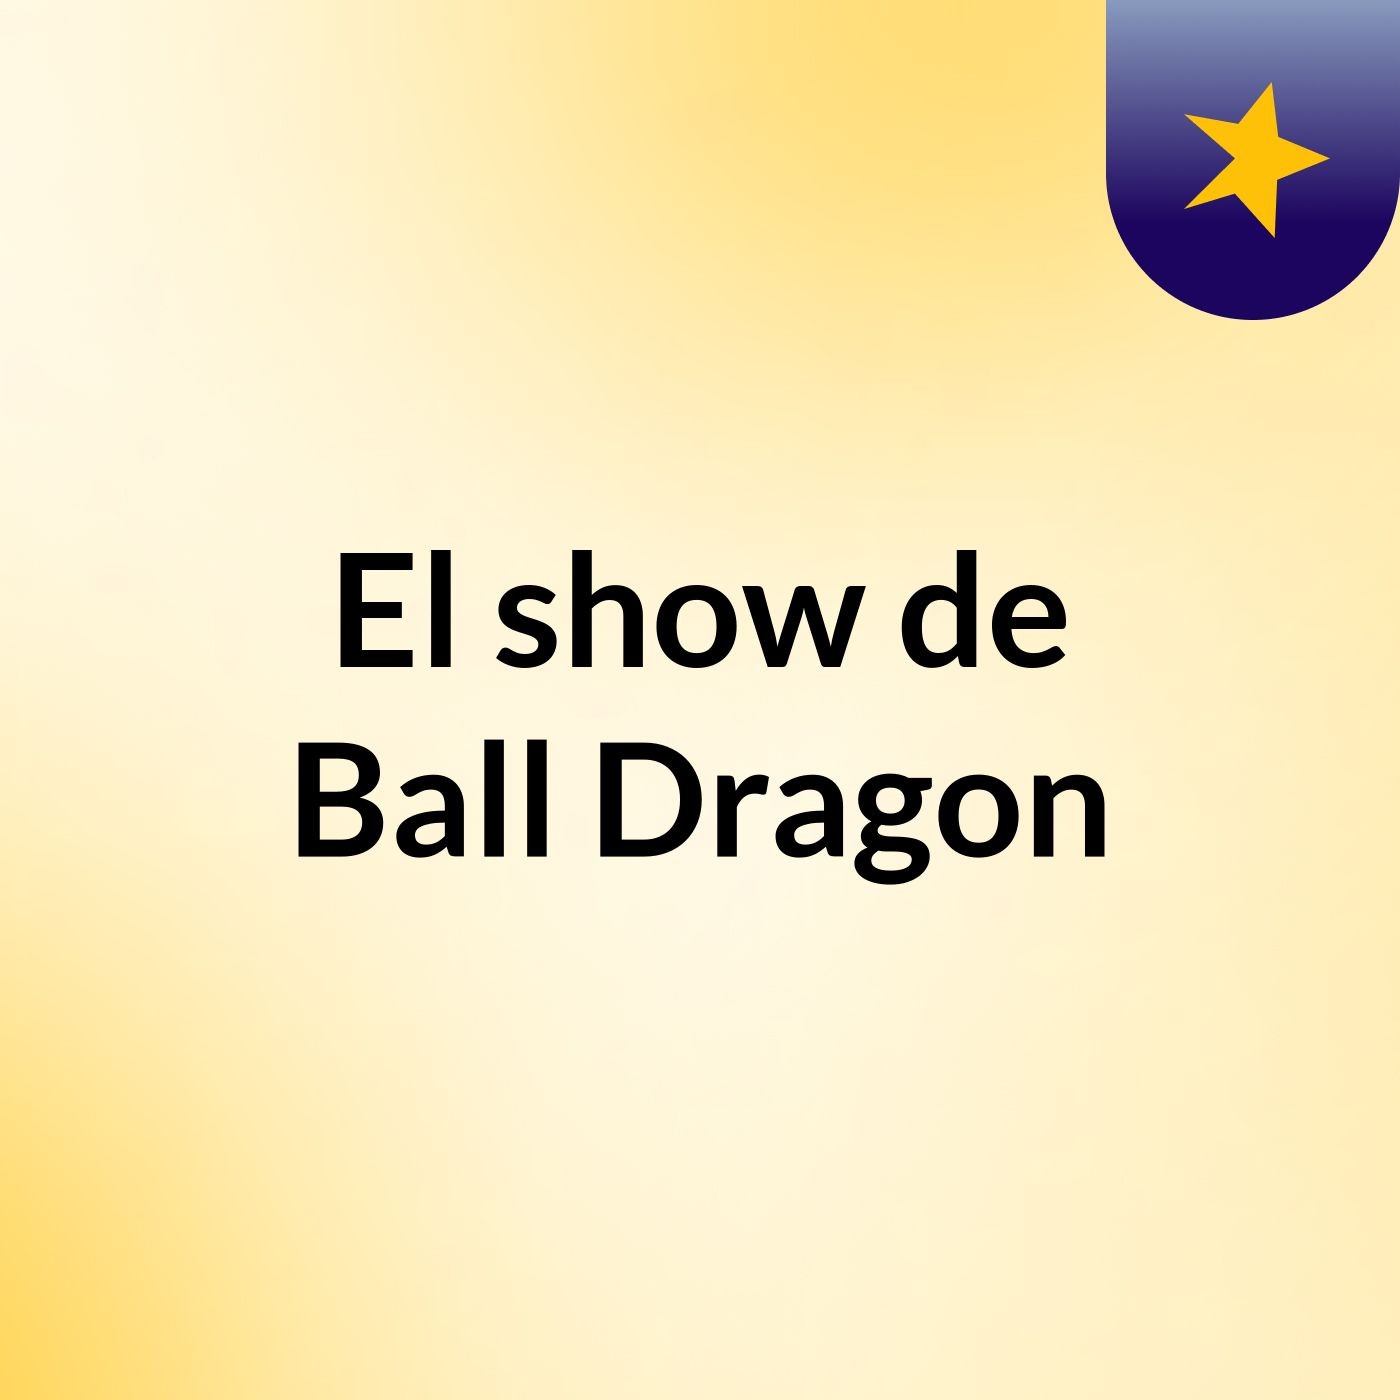 El show de Ball Dragon